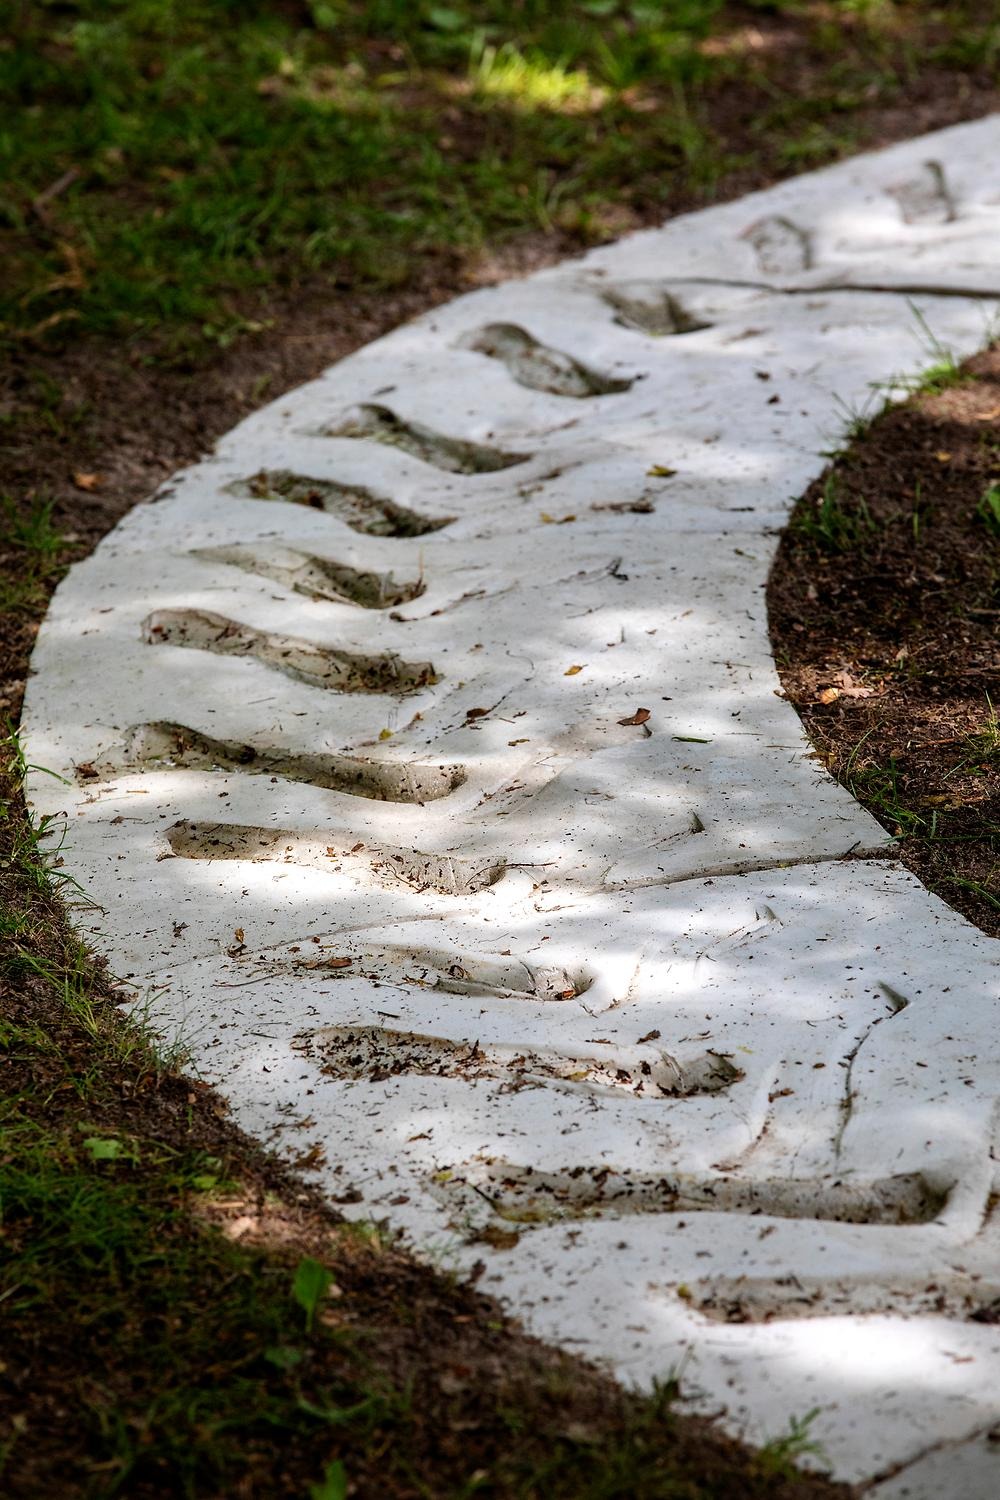 Närbild av en nedgrävd stor cirkel i gräset i en park. Cirkeln är gjord av betong och i betongen syns spår av ett traktordäck vilket gör att hela konstverket ser ut som ett traktor däck i betong. 